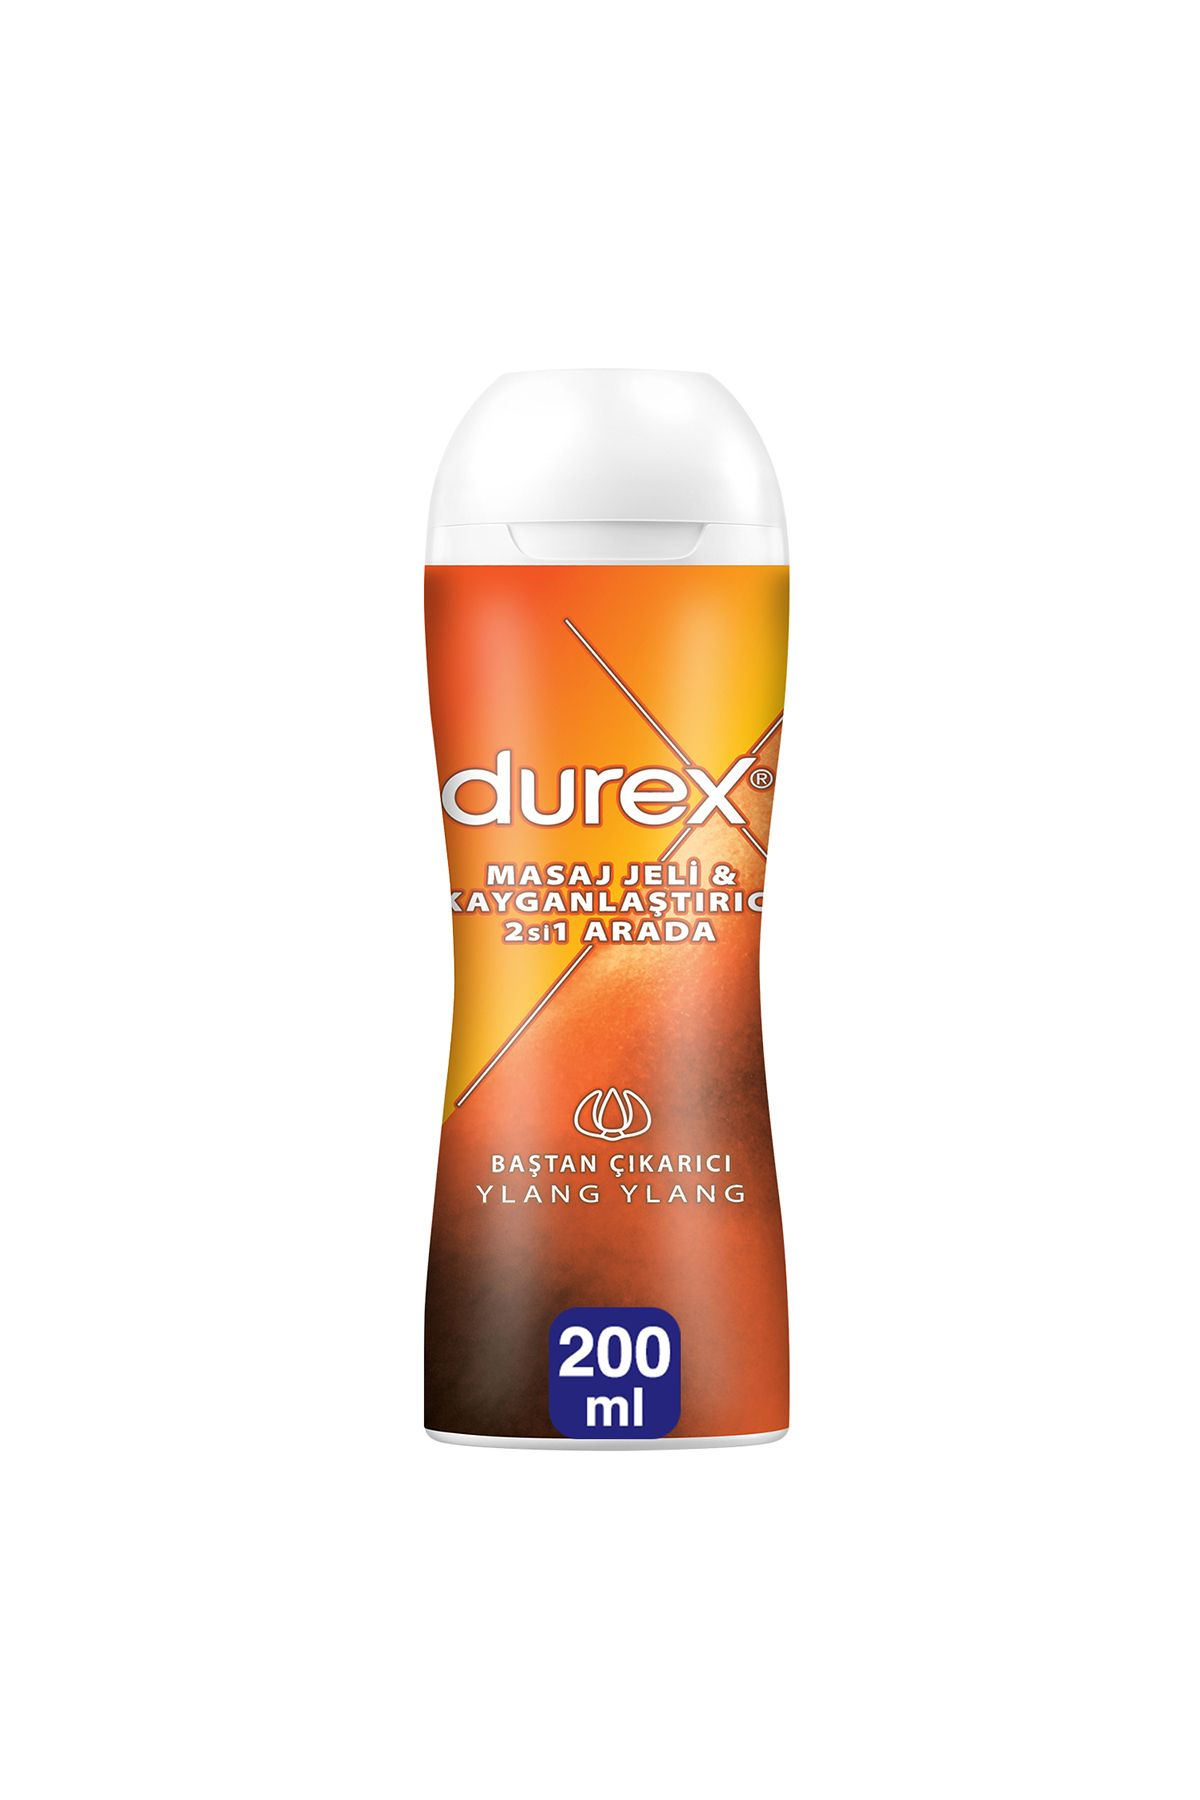 Durex massage